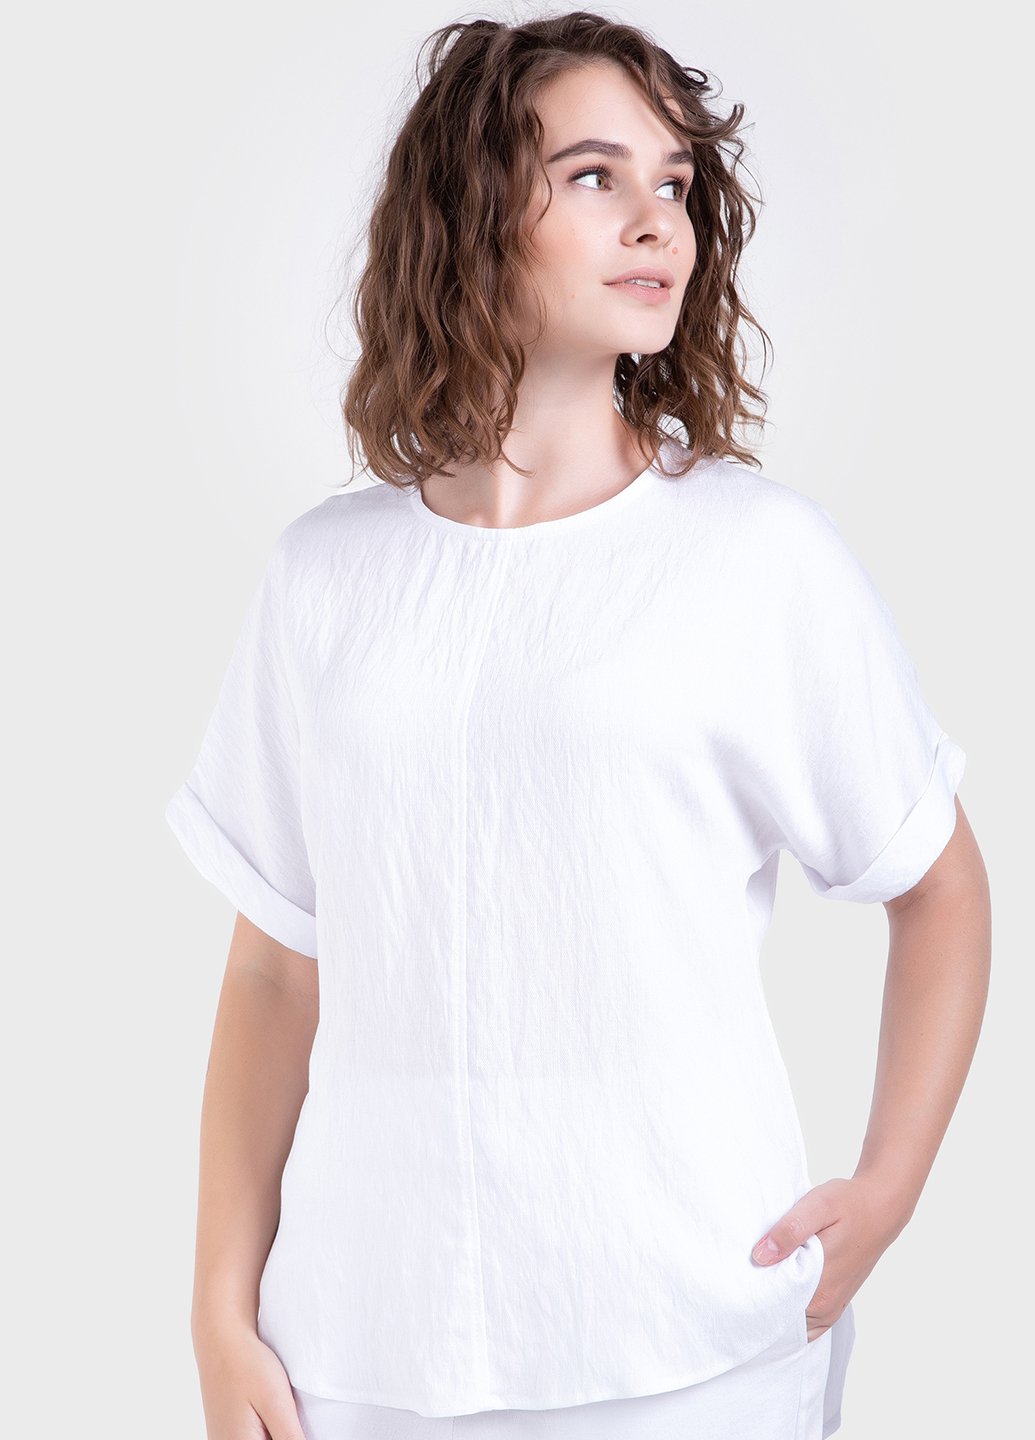 Купить Оверсайз футболка женская белого цвета из льна-жатки Merlini Салерно 800000044, размер 42-44 в интернет-магазине